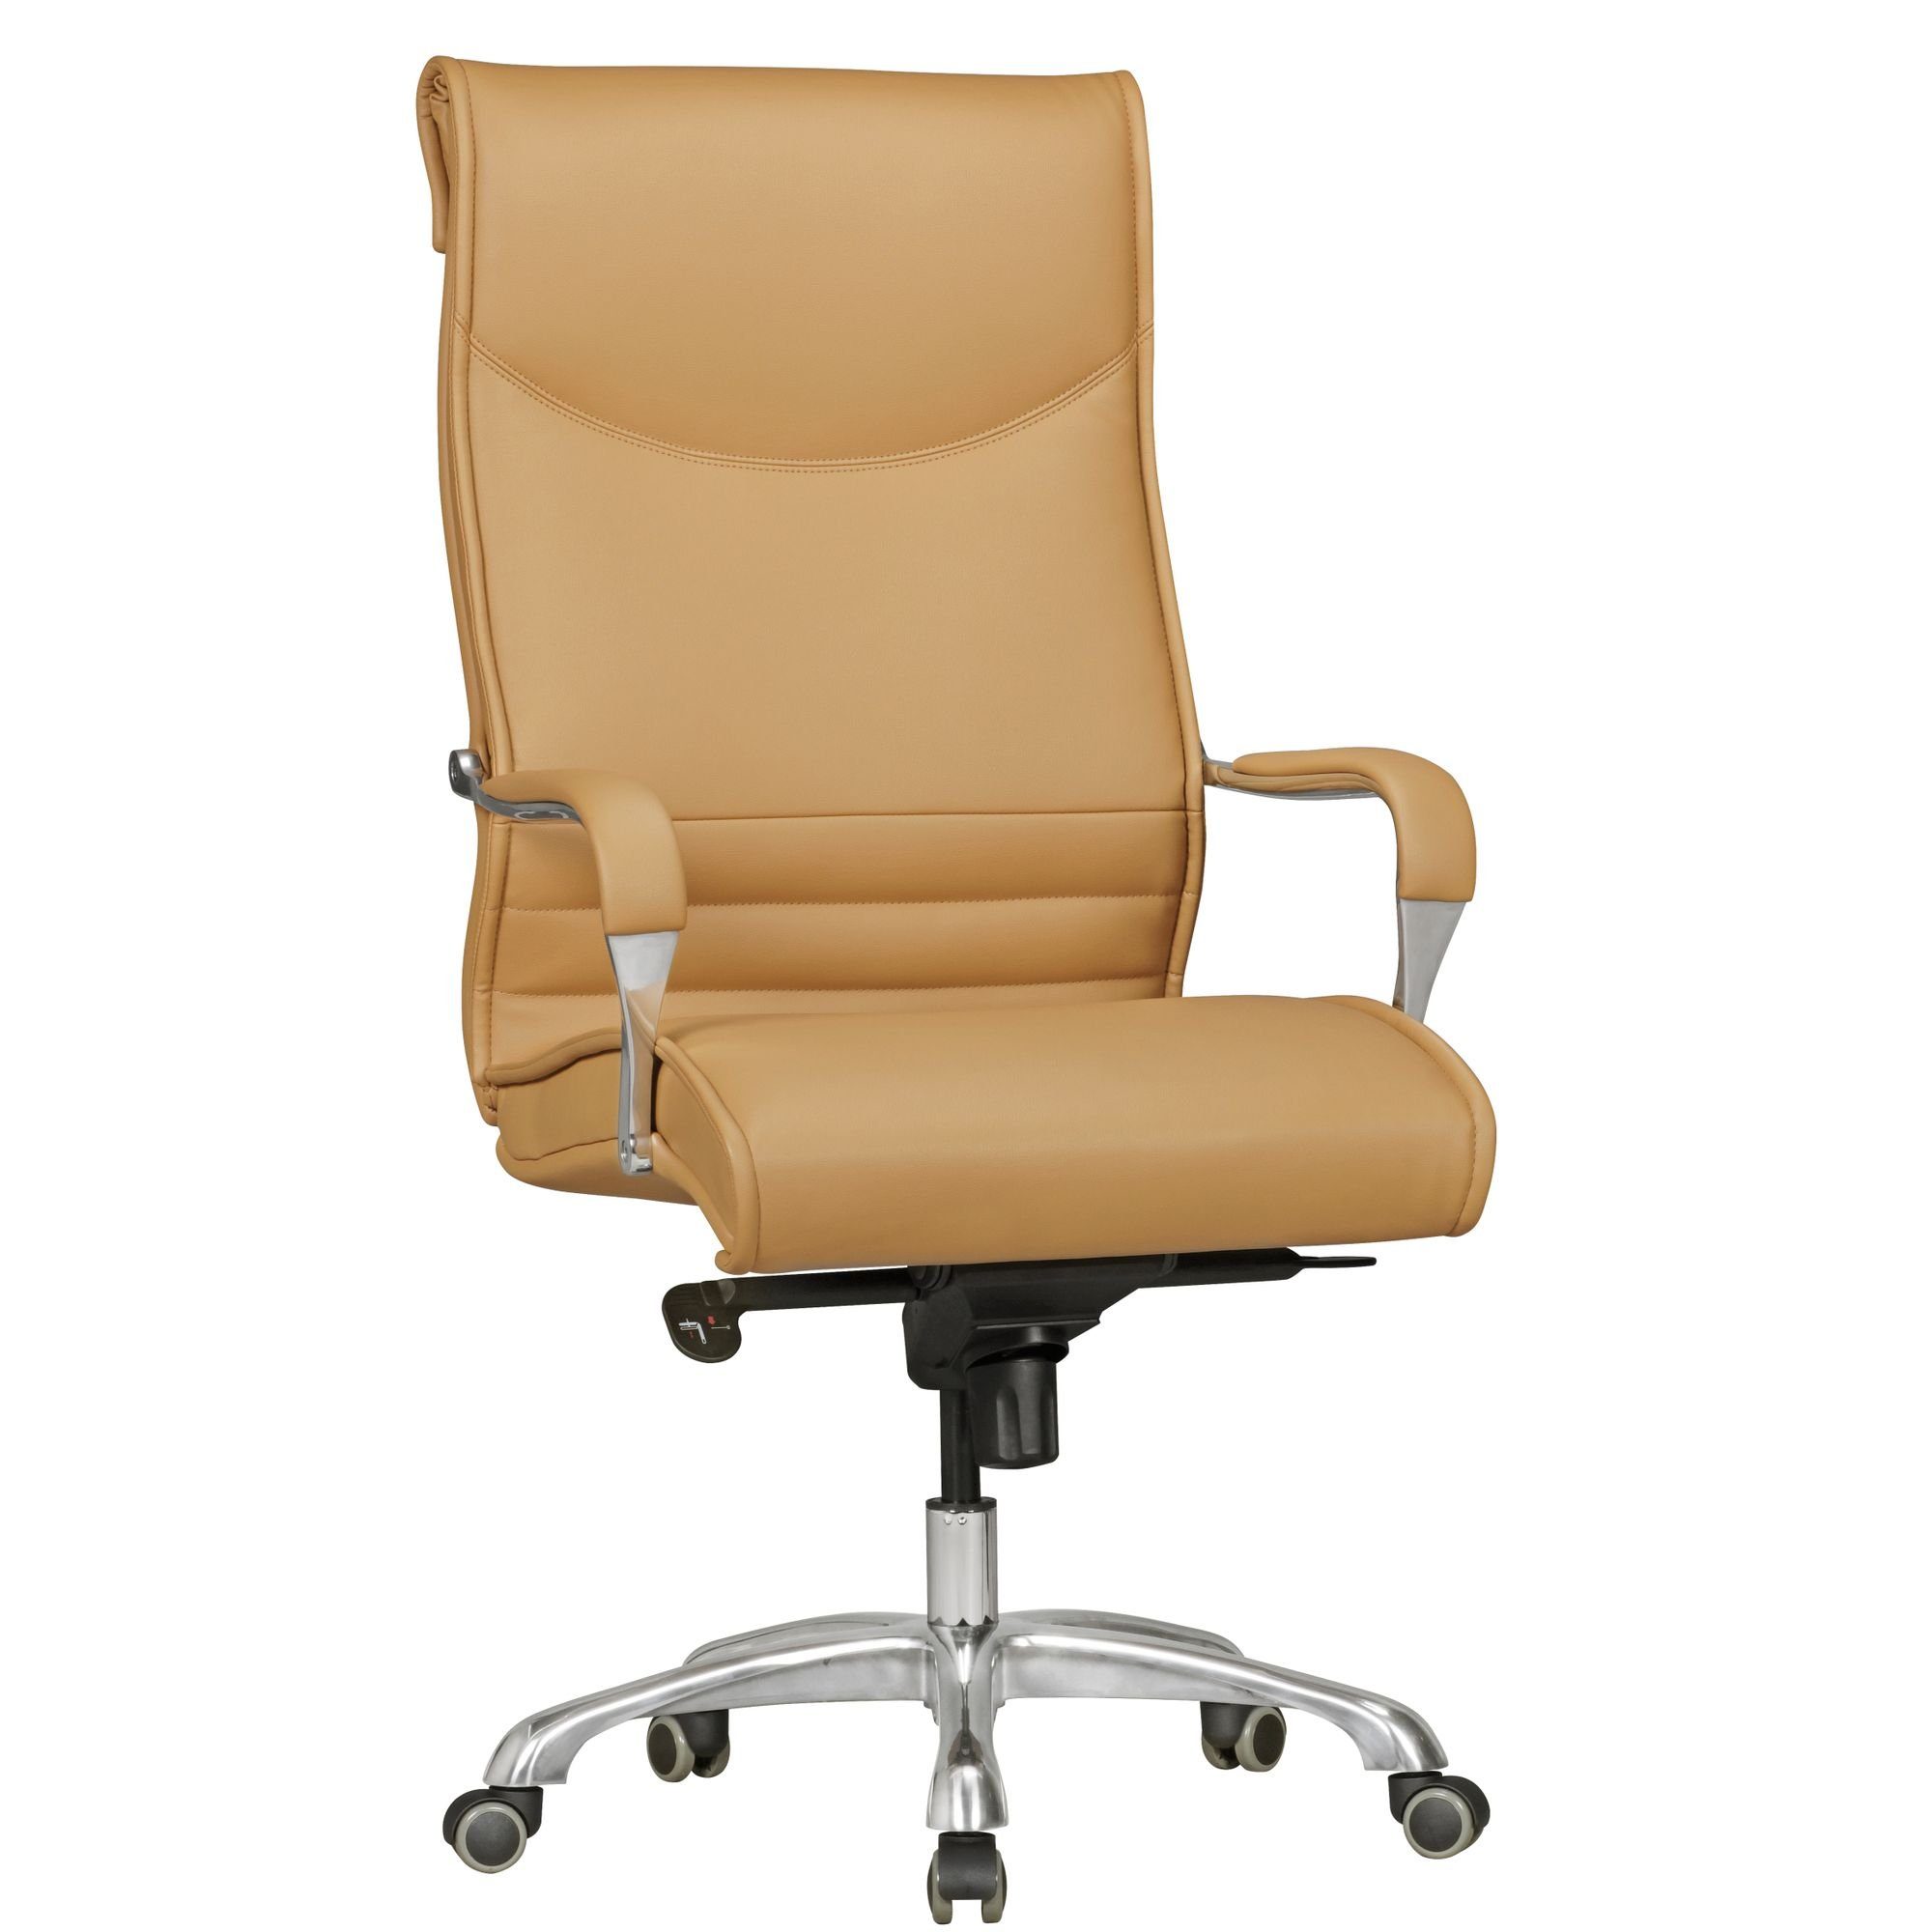 Qualität geht vor [berühmt] KADIMA DESIGN Chefsessel Chefsessel | Beige Komfortabler Braun Sitzen - für Arbeitssessel ergonomisches